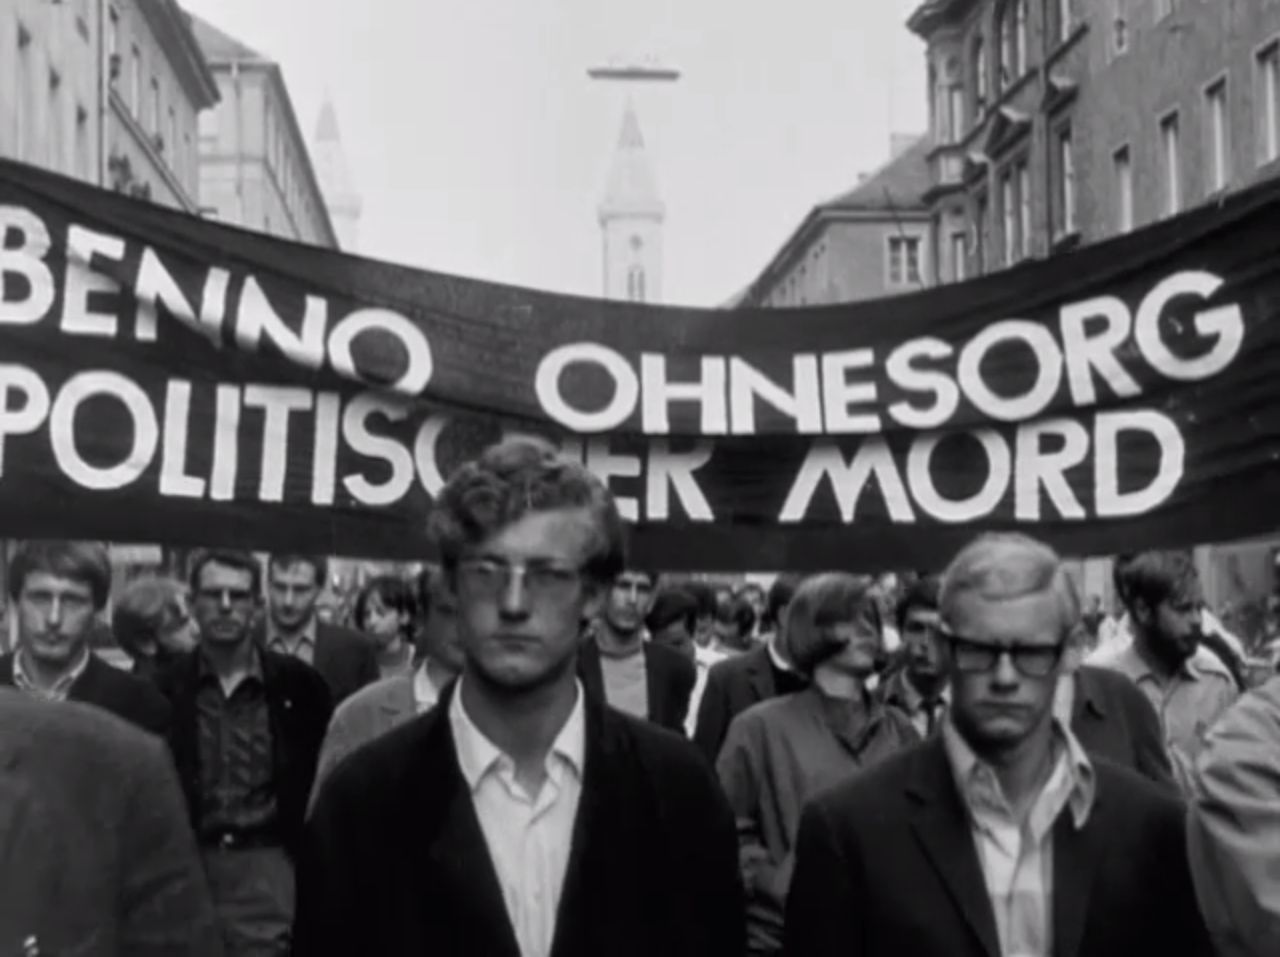 Die UFA-Wochenschau berichtet über die Studentendemonstrationen in zahlreichen westdeutschen Städten und das Attentat auf Rudi Dutschke am 11. April 1968 durch den Hilfsarbeiter Josef Bachmann.